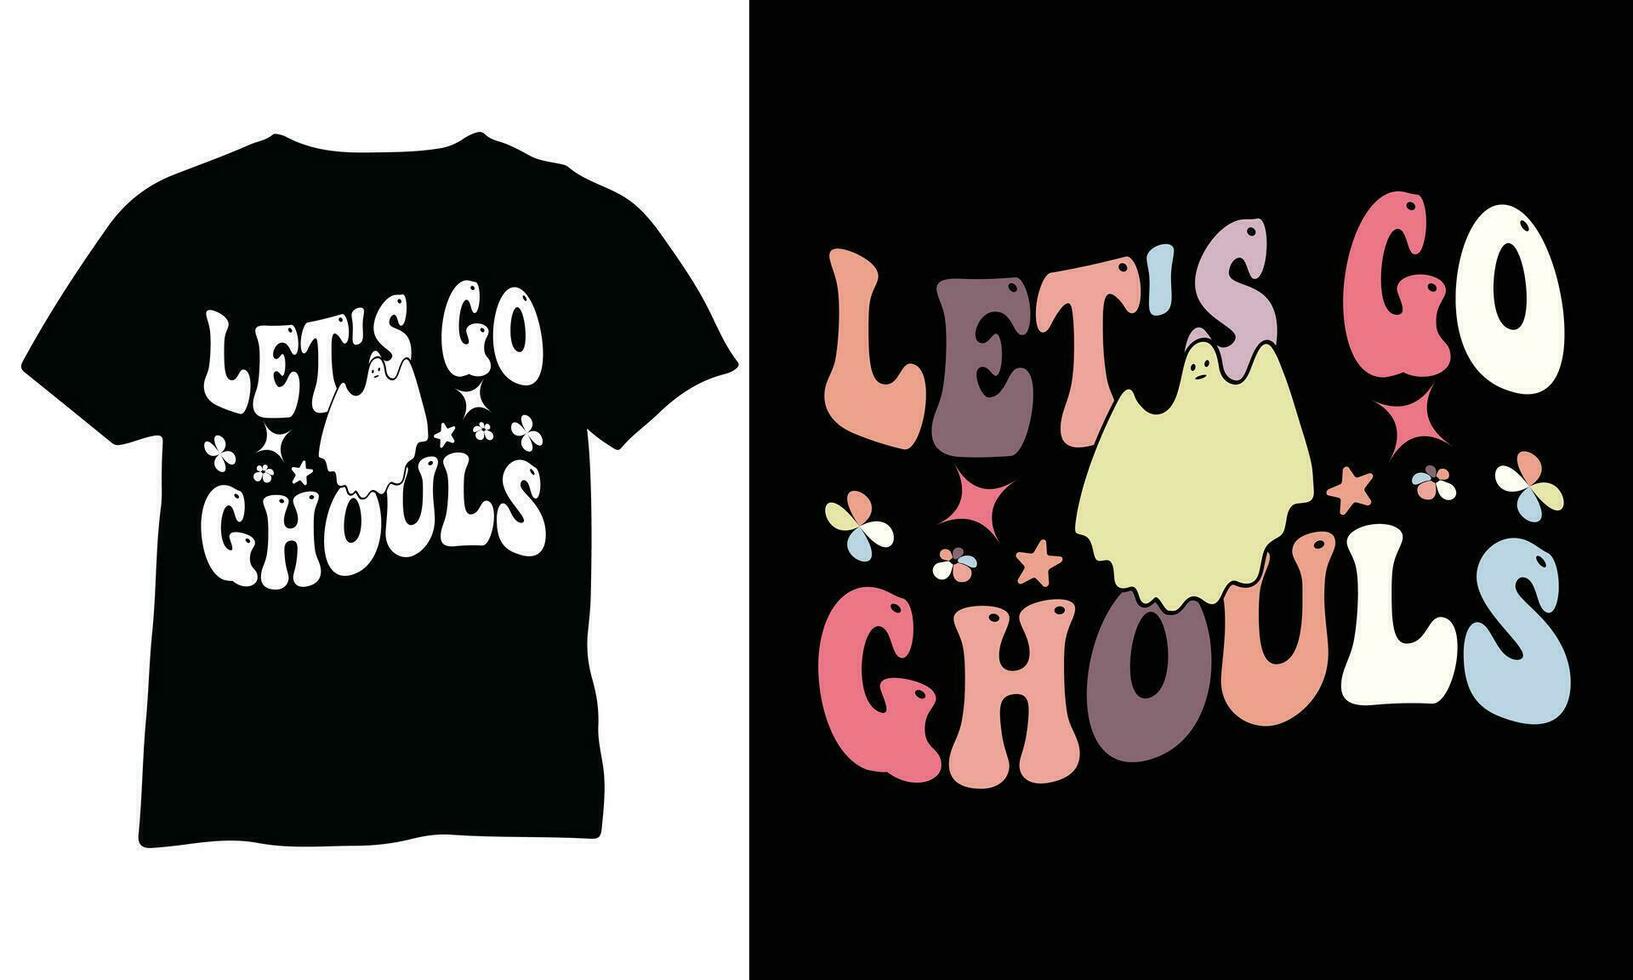 nous allons aller goules mignonne des fantômes Halloween conception Halloween chemise eps dessins vecteur